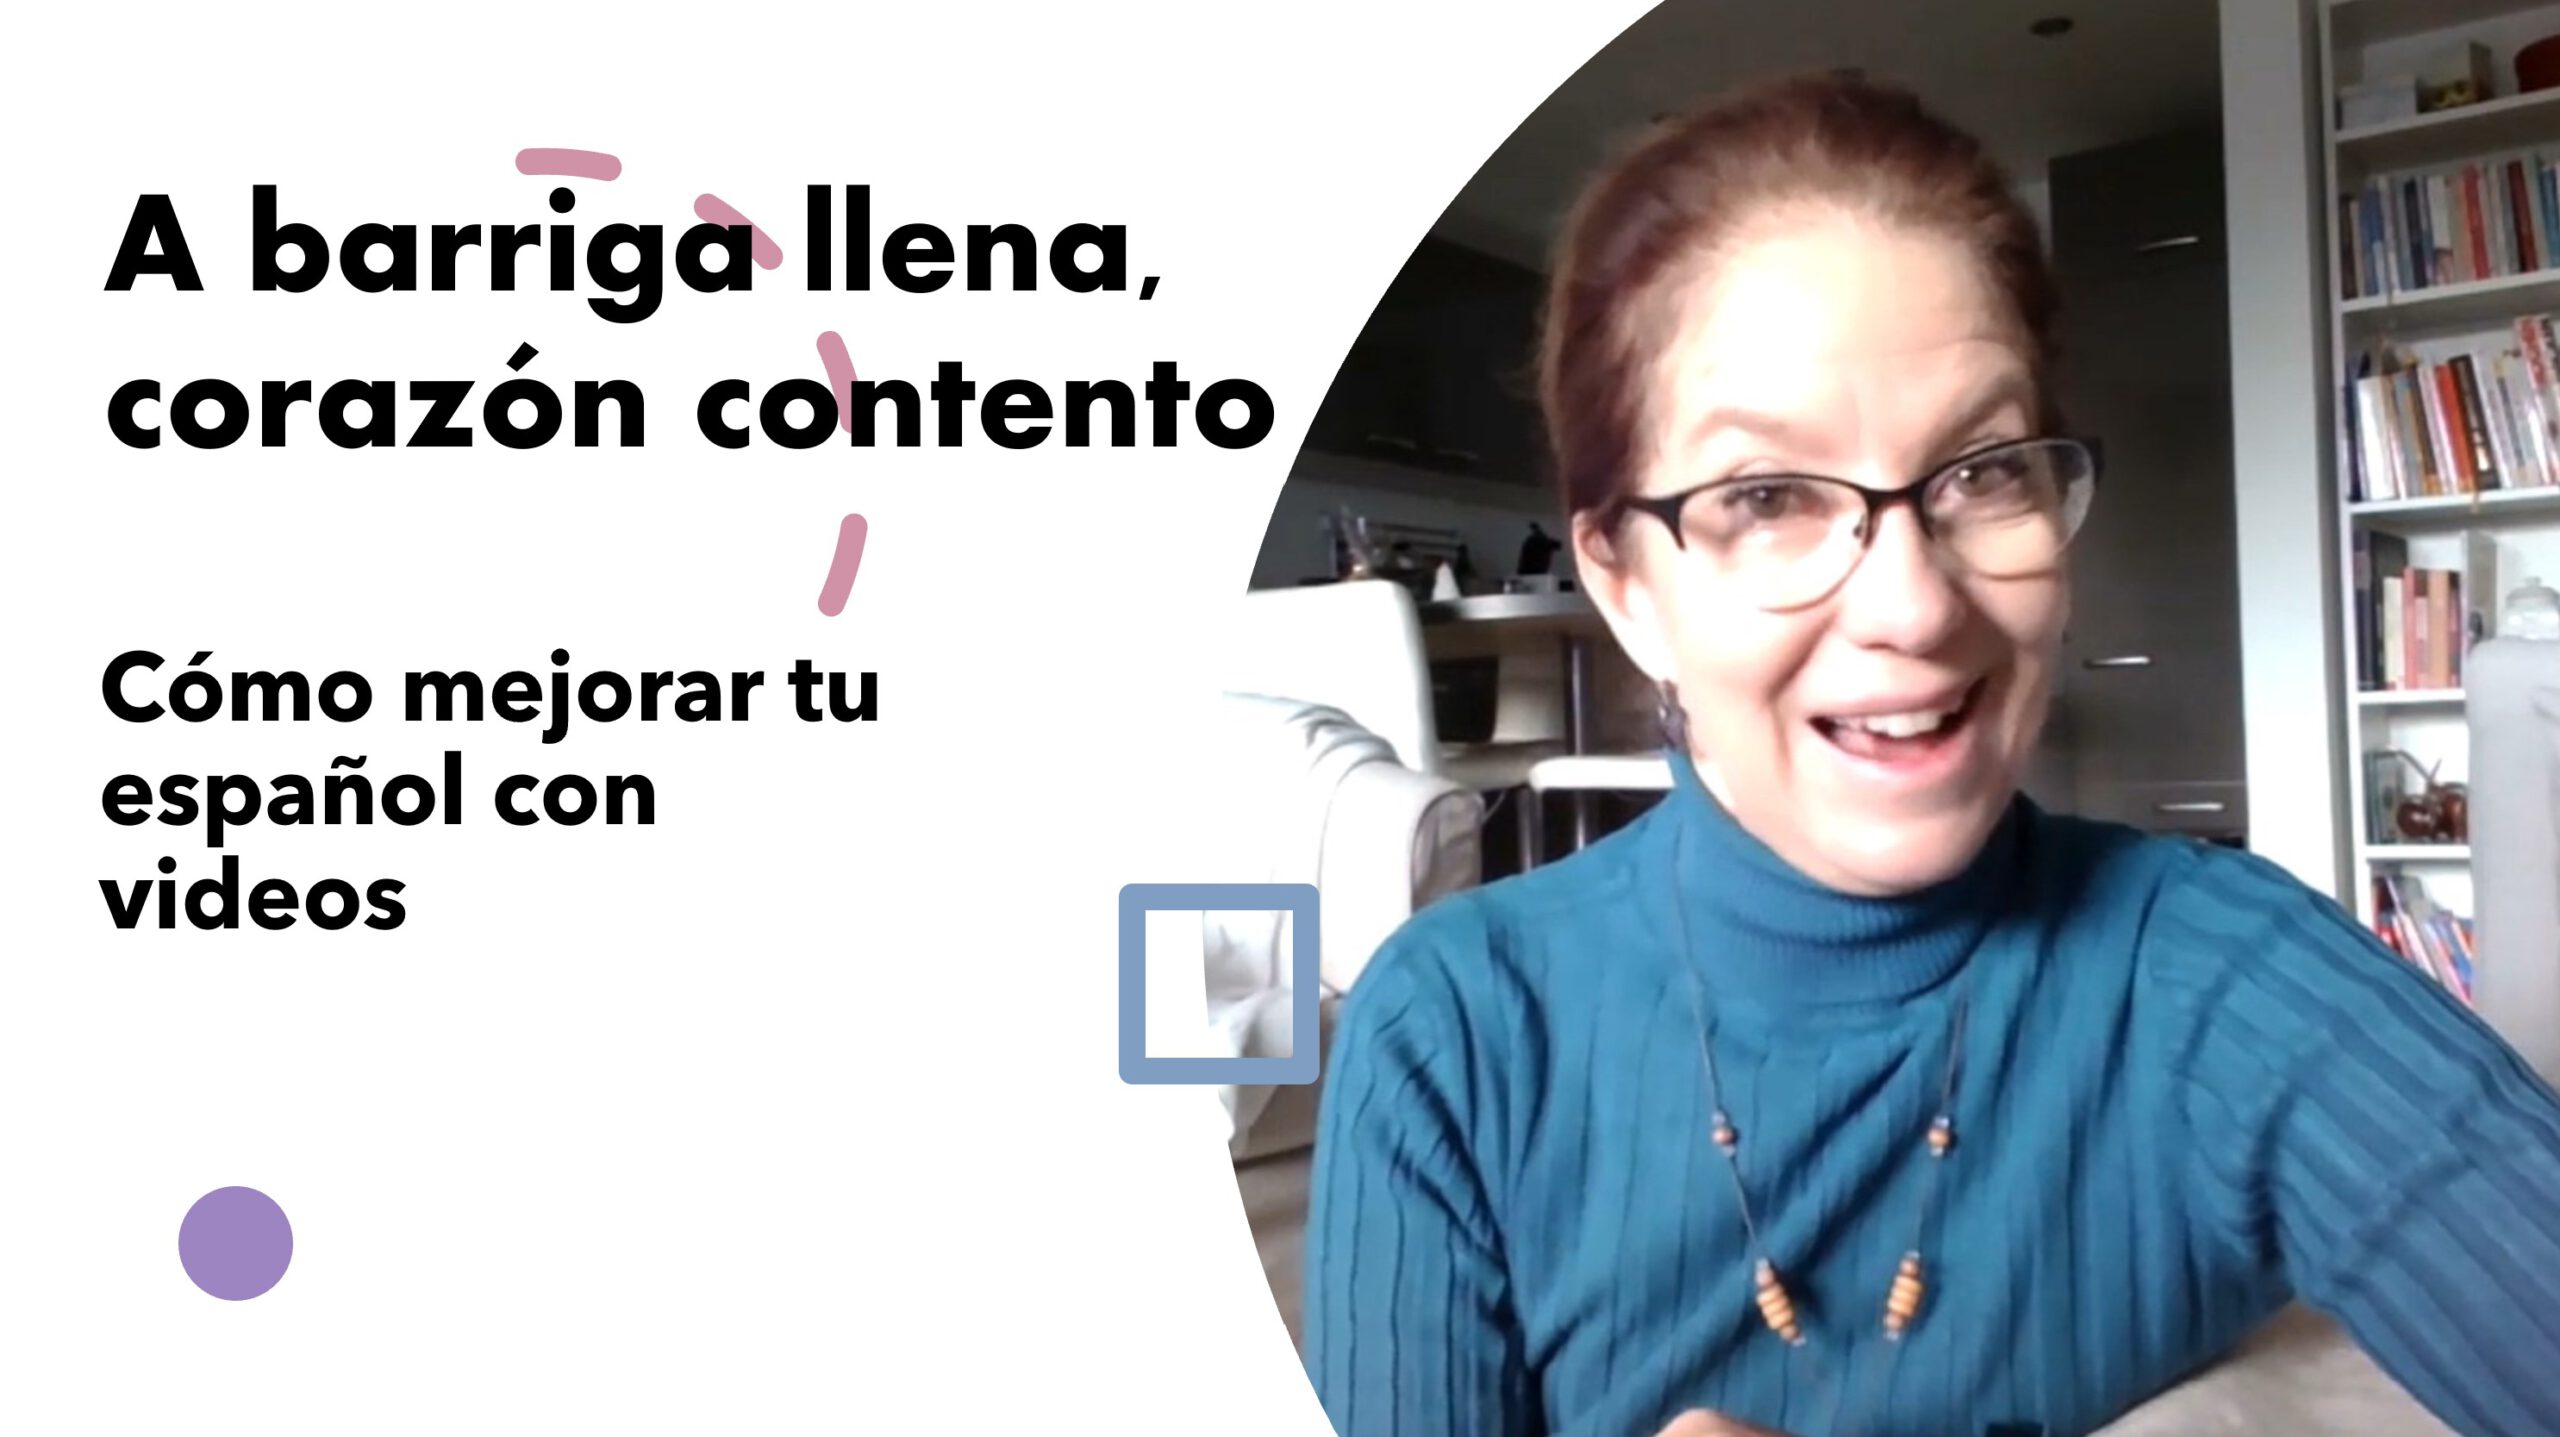 Cómo Mejorar Tu Español A Barriga Llena Corazón Contento 4338